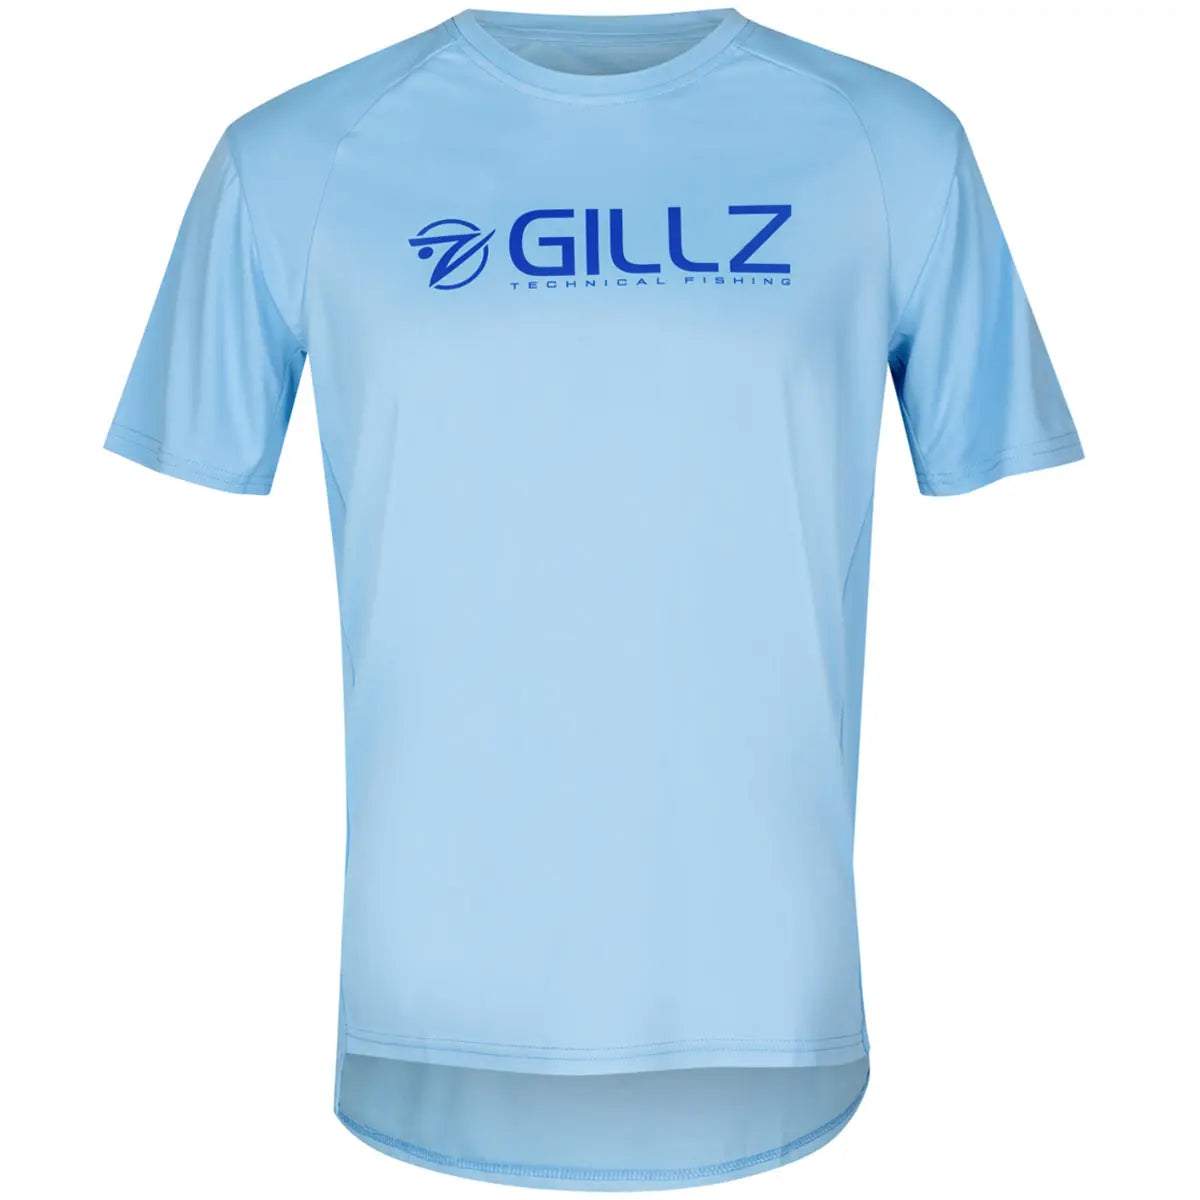 Gillz Contender Series Asslt UV Long Sleeve T-Shirt - Powder Blue